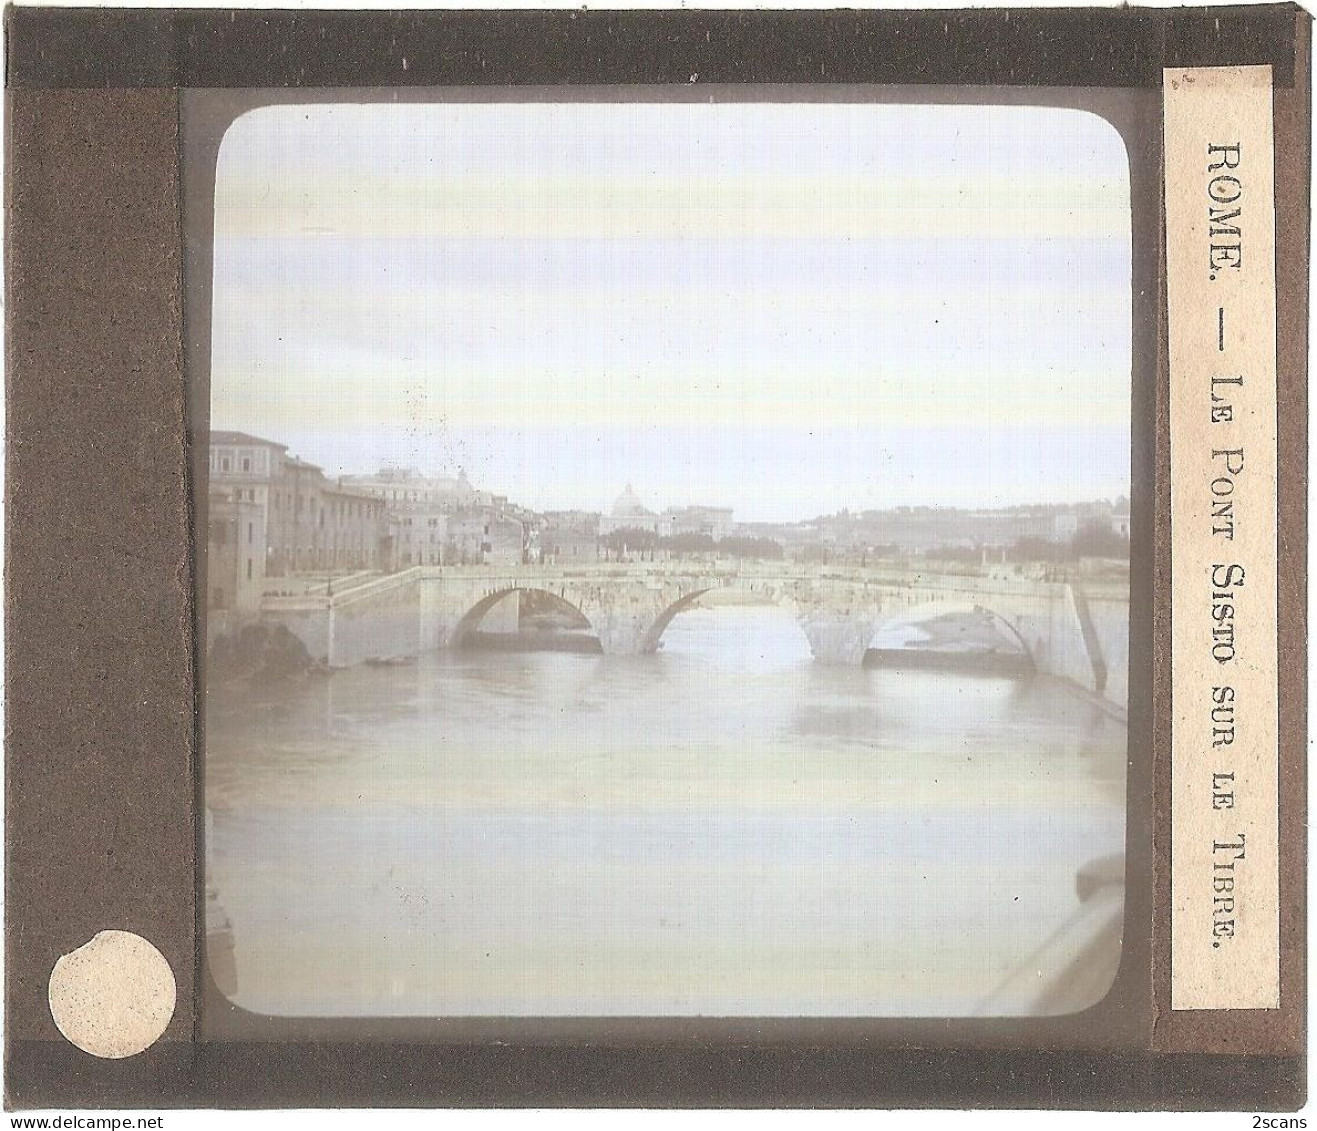 Italie - ROME - ROMA - Plaque De Verre Ancienne (1906) - Le Pont Sisto Sur Le Tibre - Bruggen